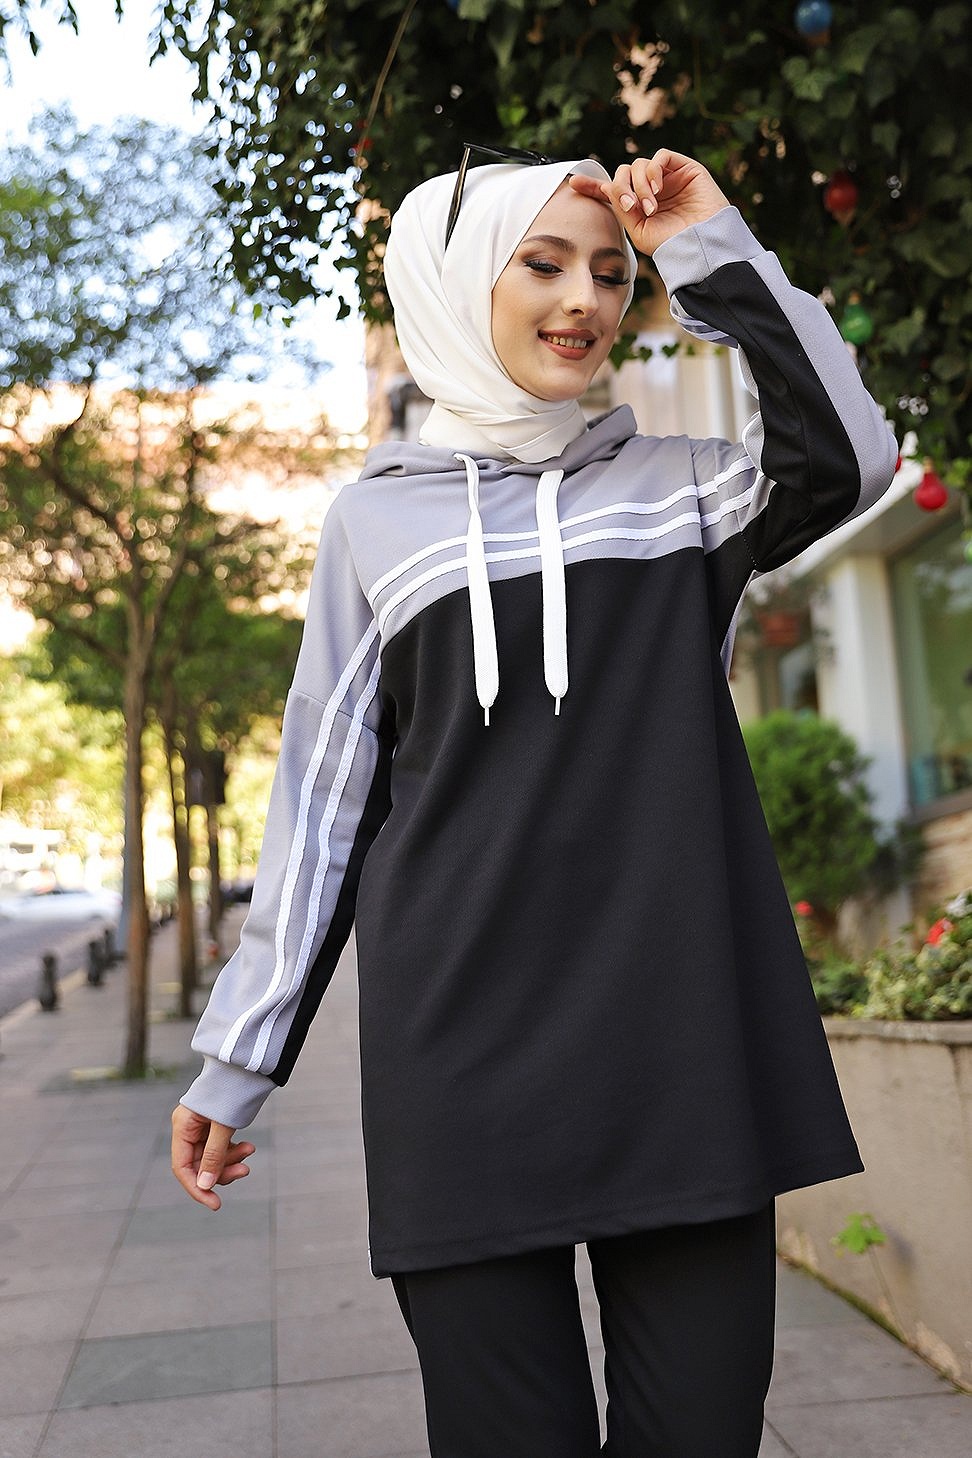 Survêtement femme (Boutique Vêtement Sport pour Hijab) - Couleur